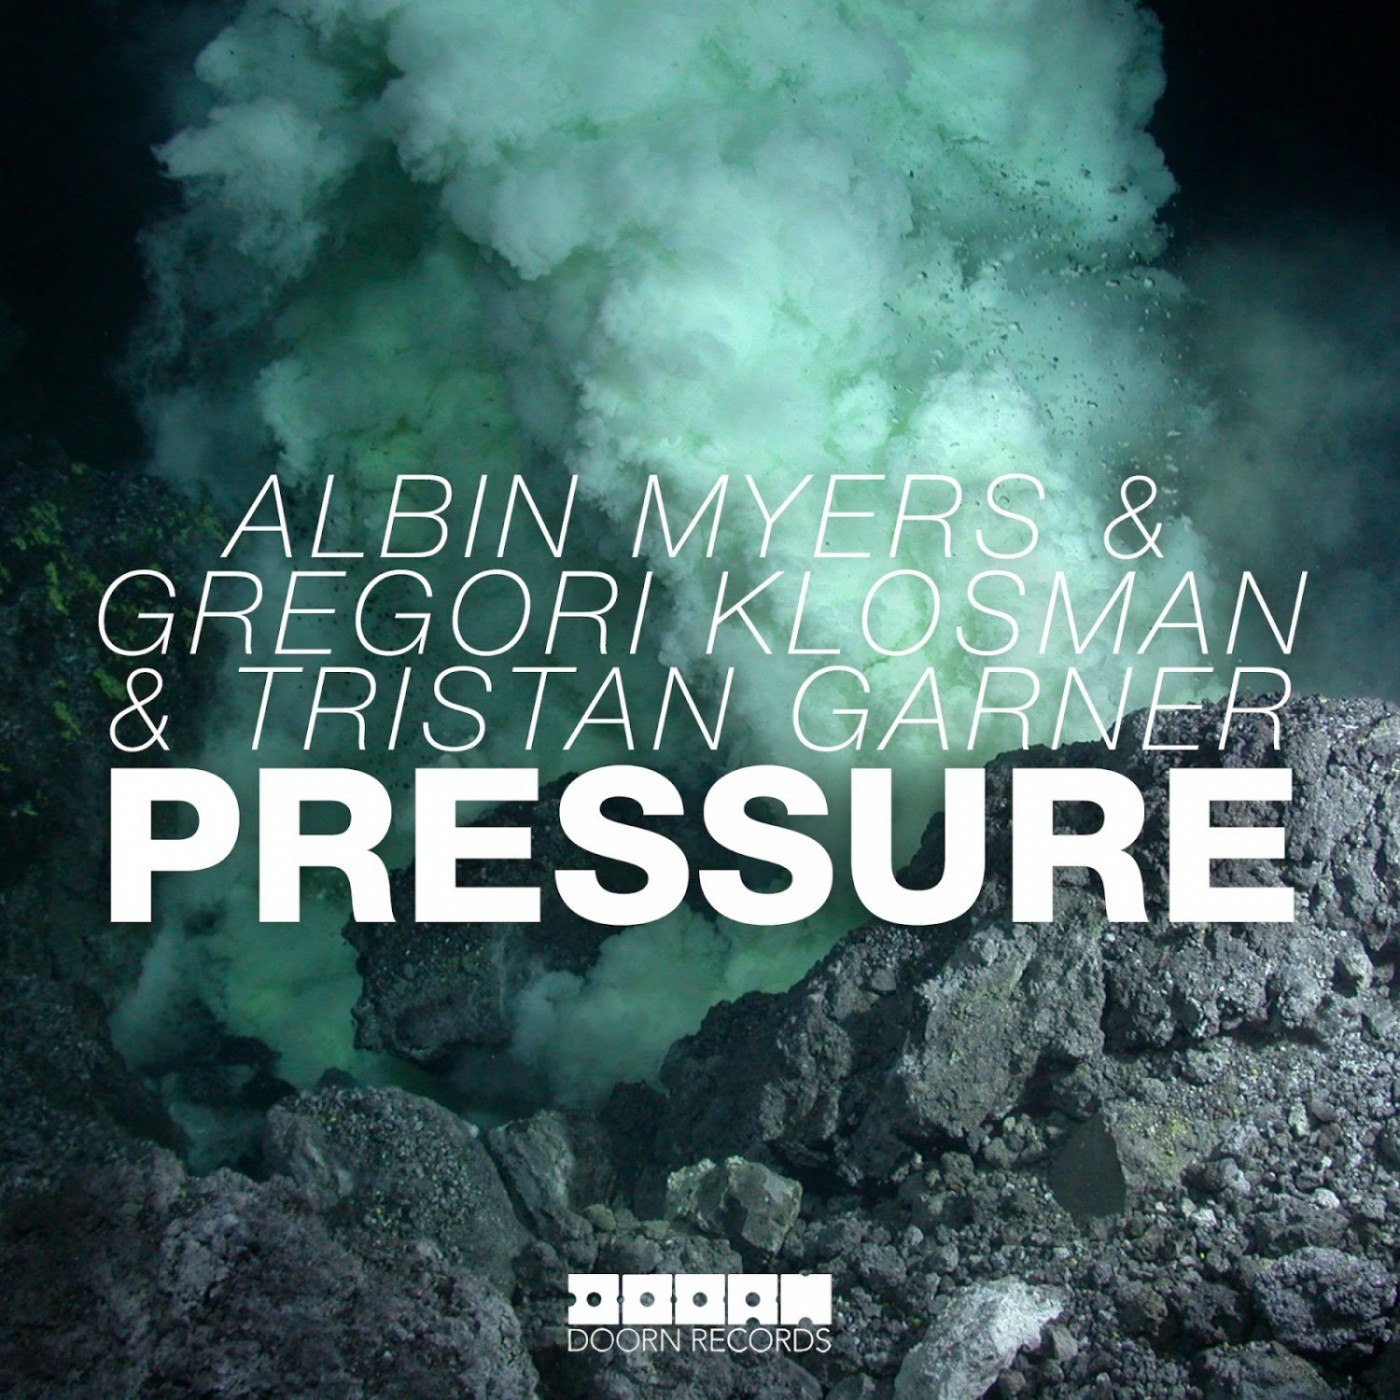 gregori-klosman-albin-myers-tristan-garner-pressure-doorn-records